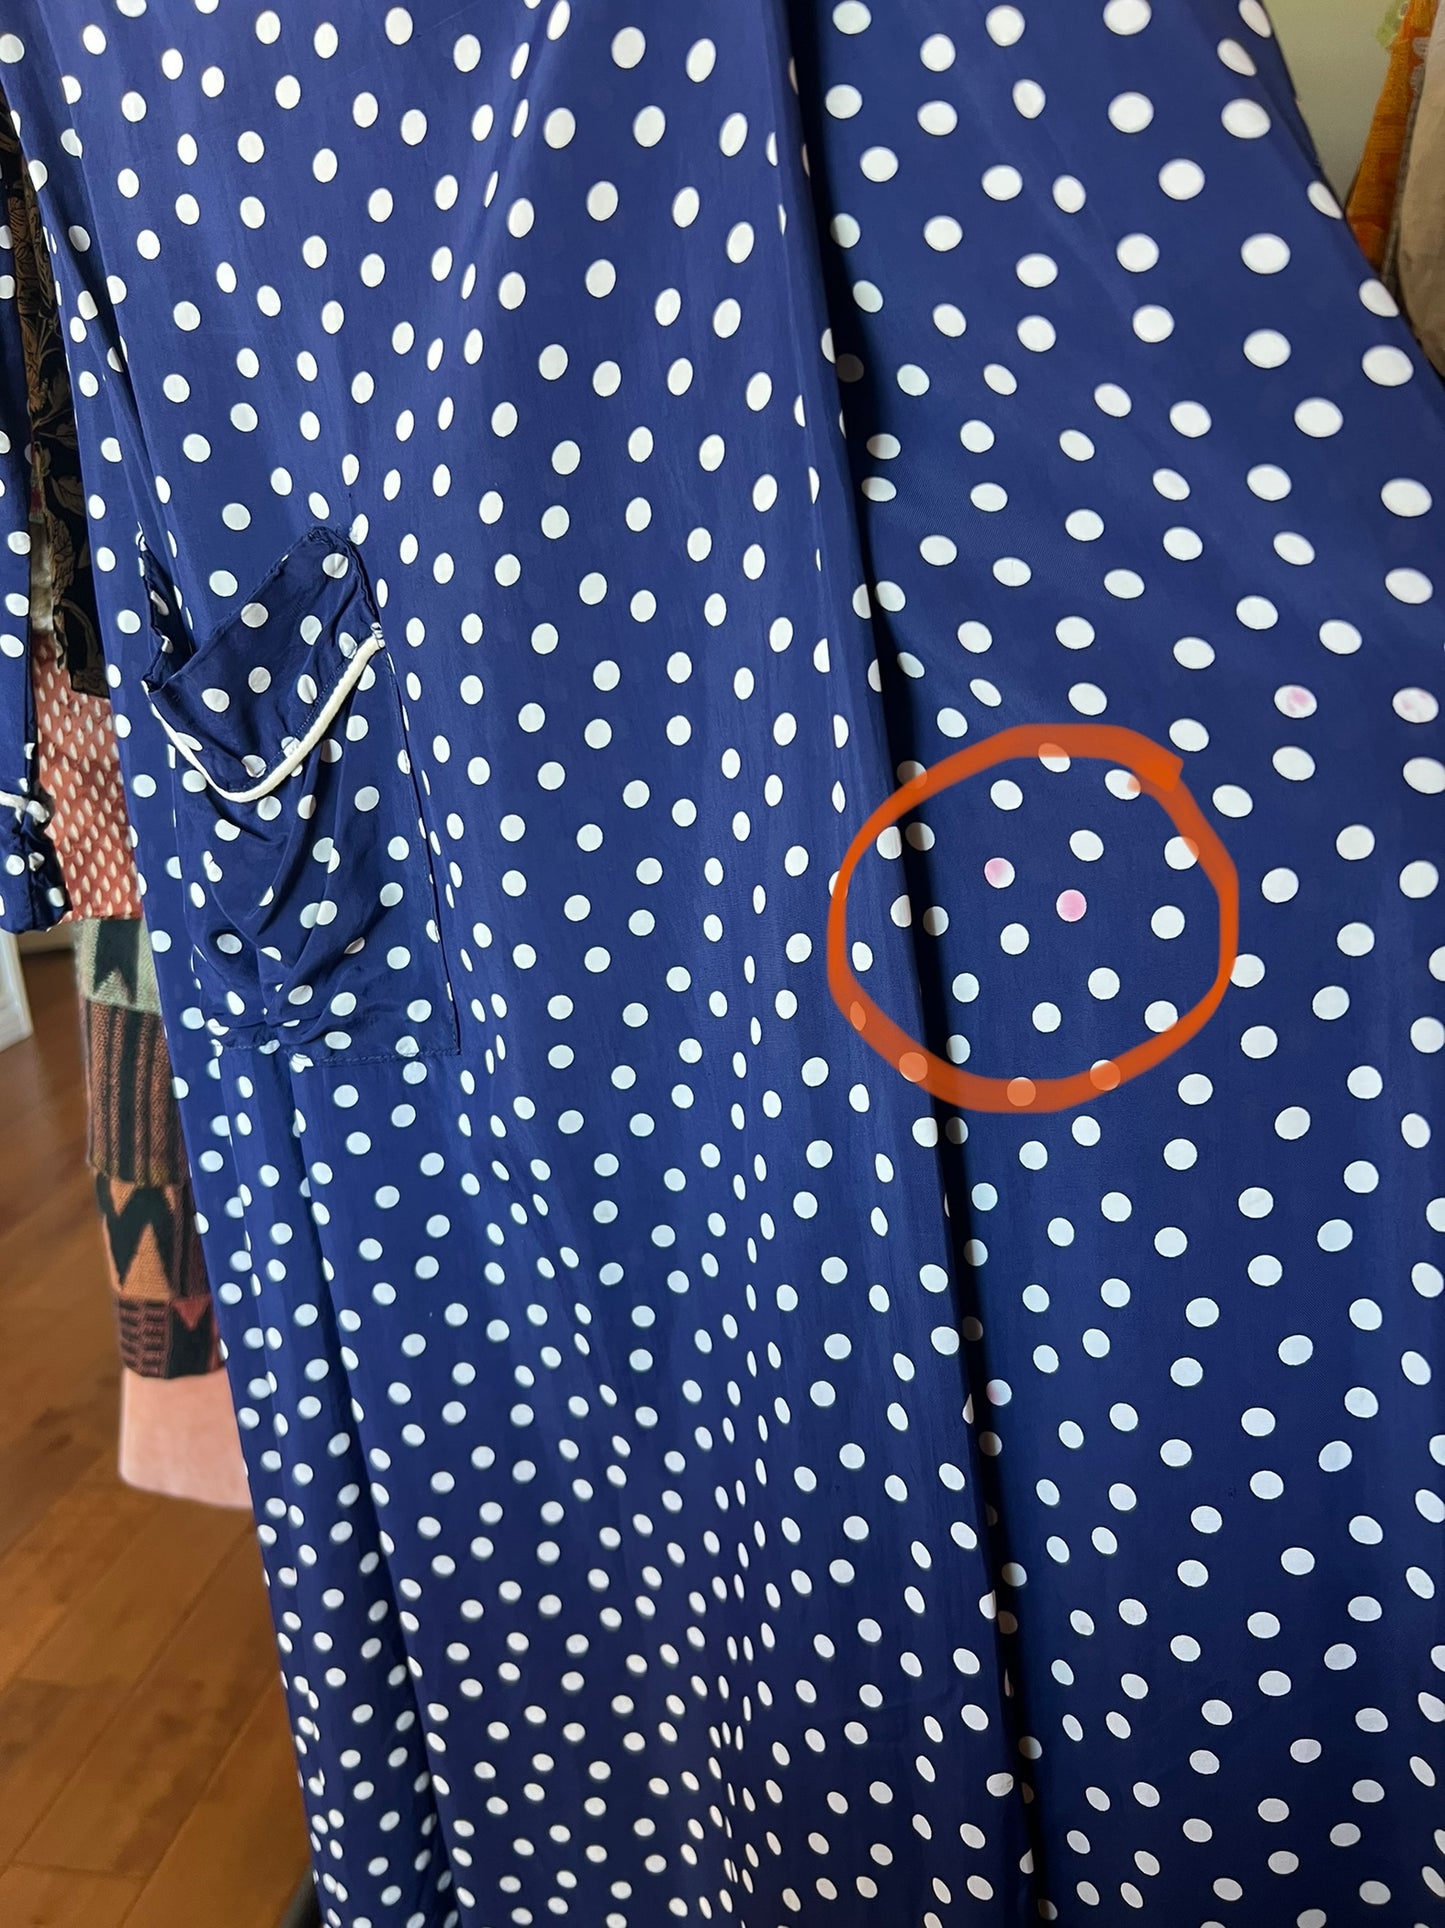 30/40's Polka Dot Wrap Dress, Sz Medium